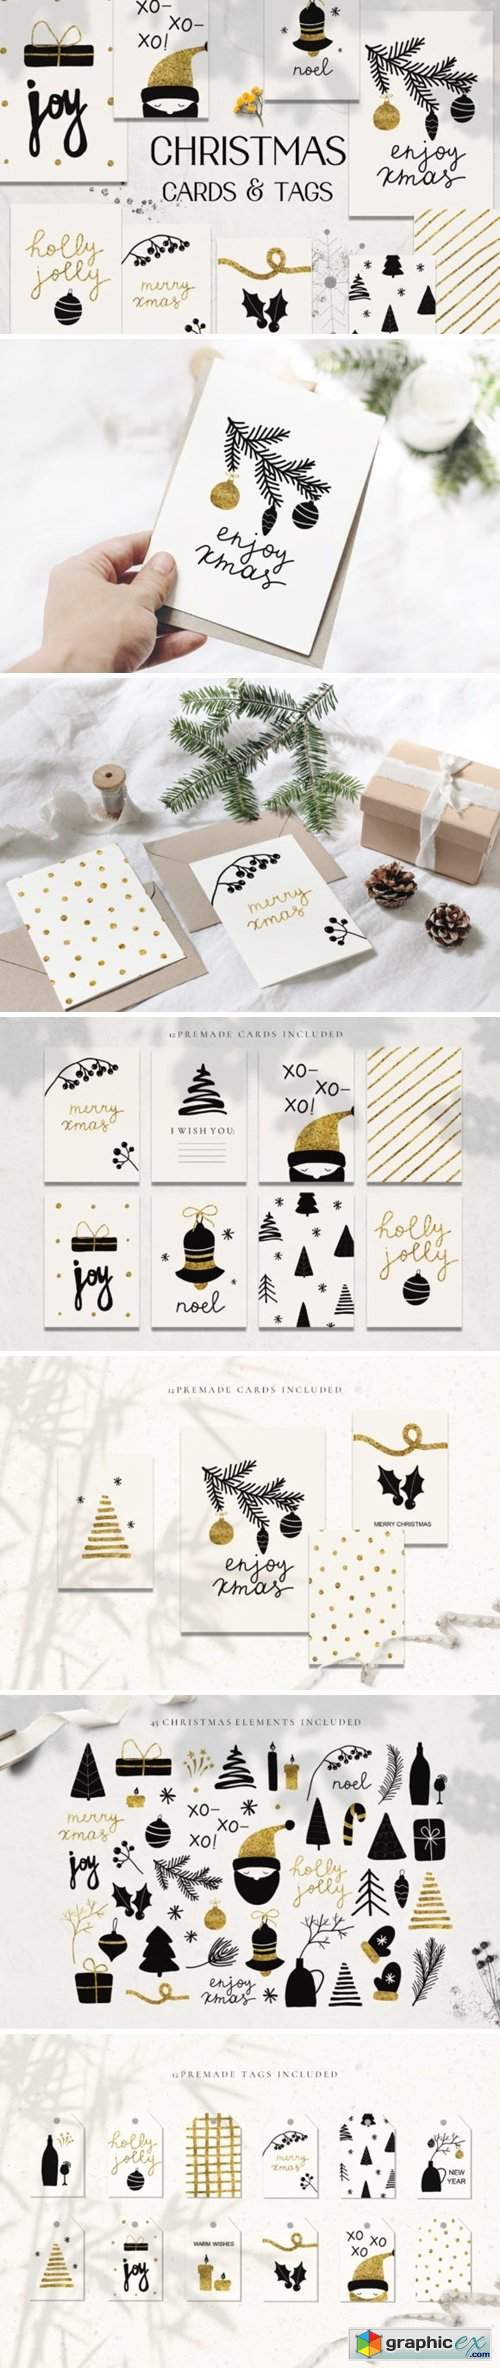  Christmas Holiday Cards & Tags Set 